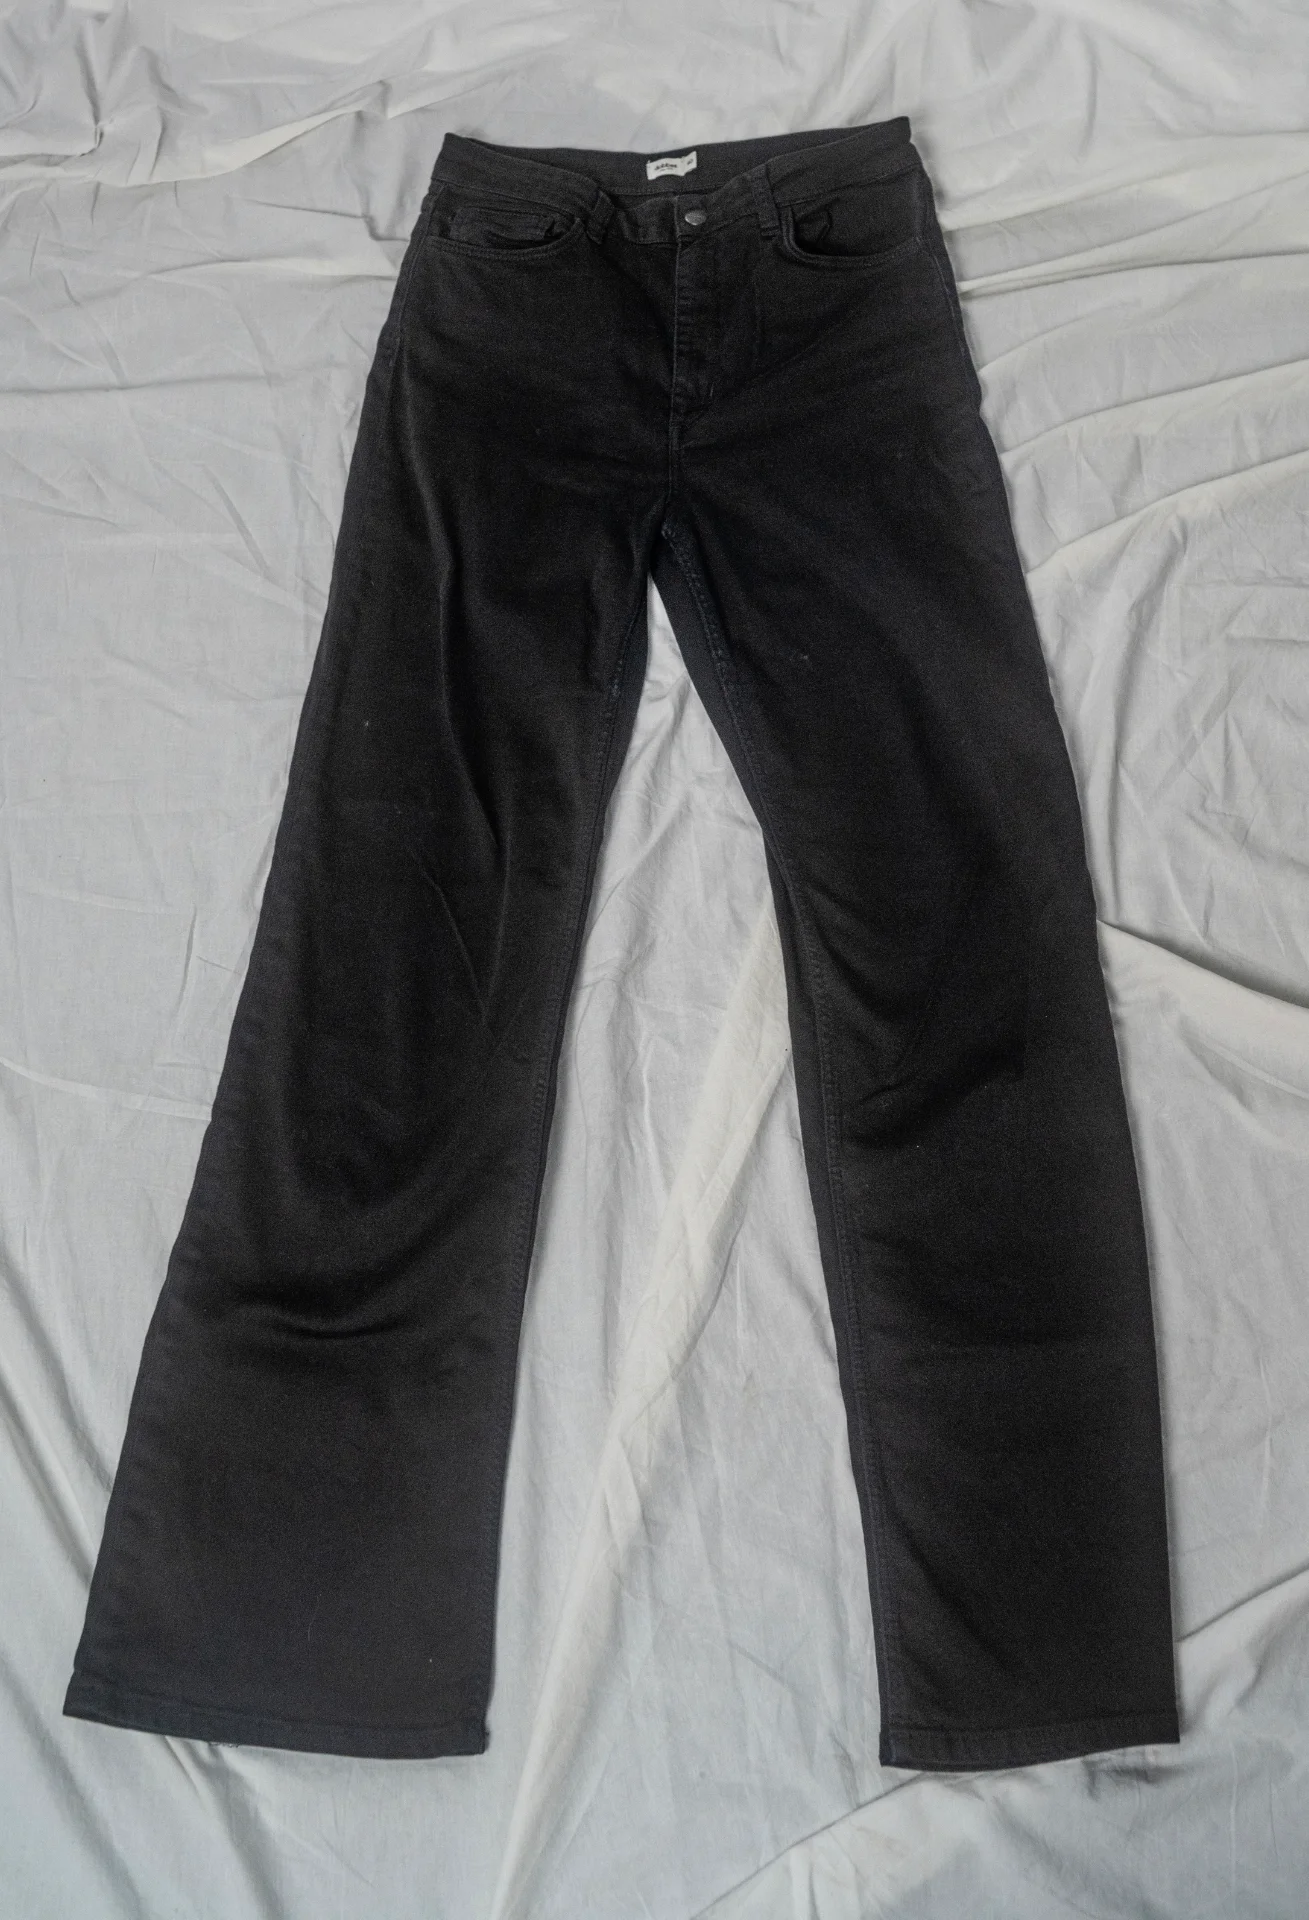 Dobber - Black Jeans (40)